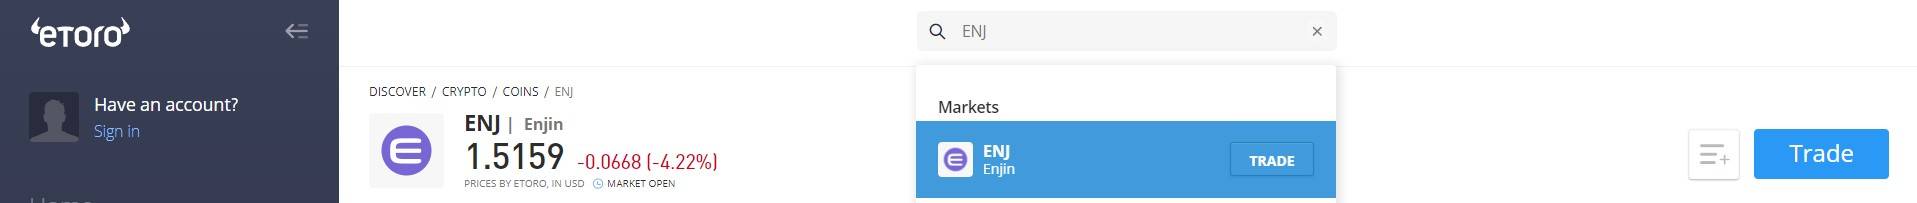 How to Buy Enjin (ENJ) on eToro